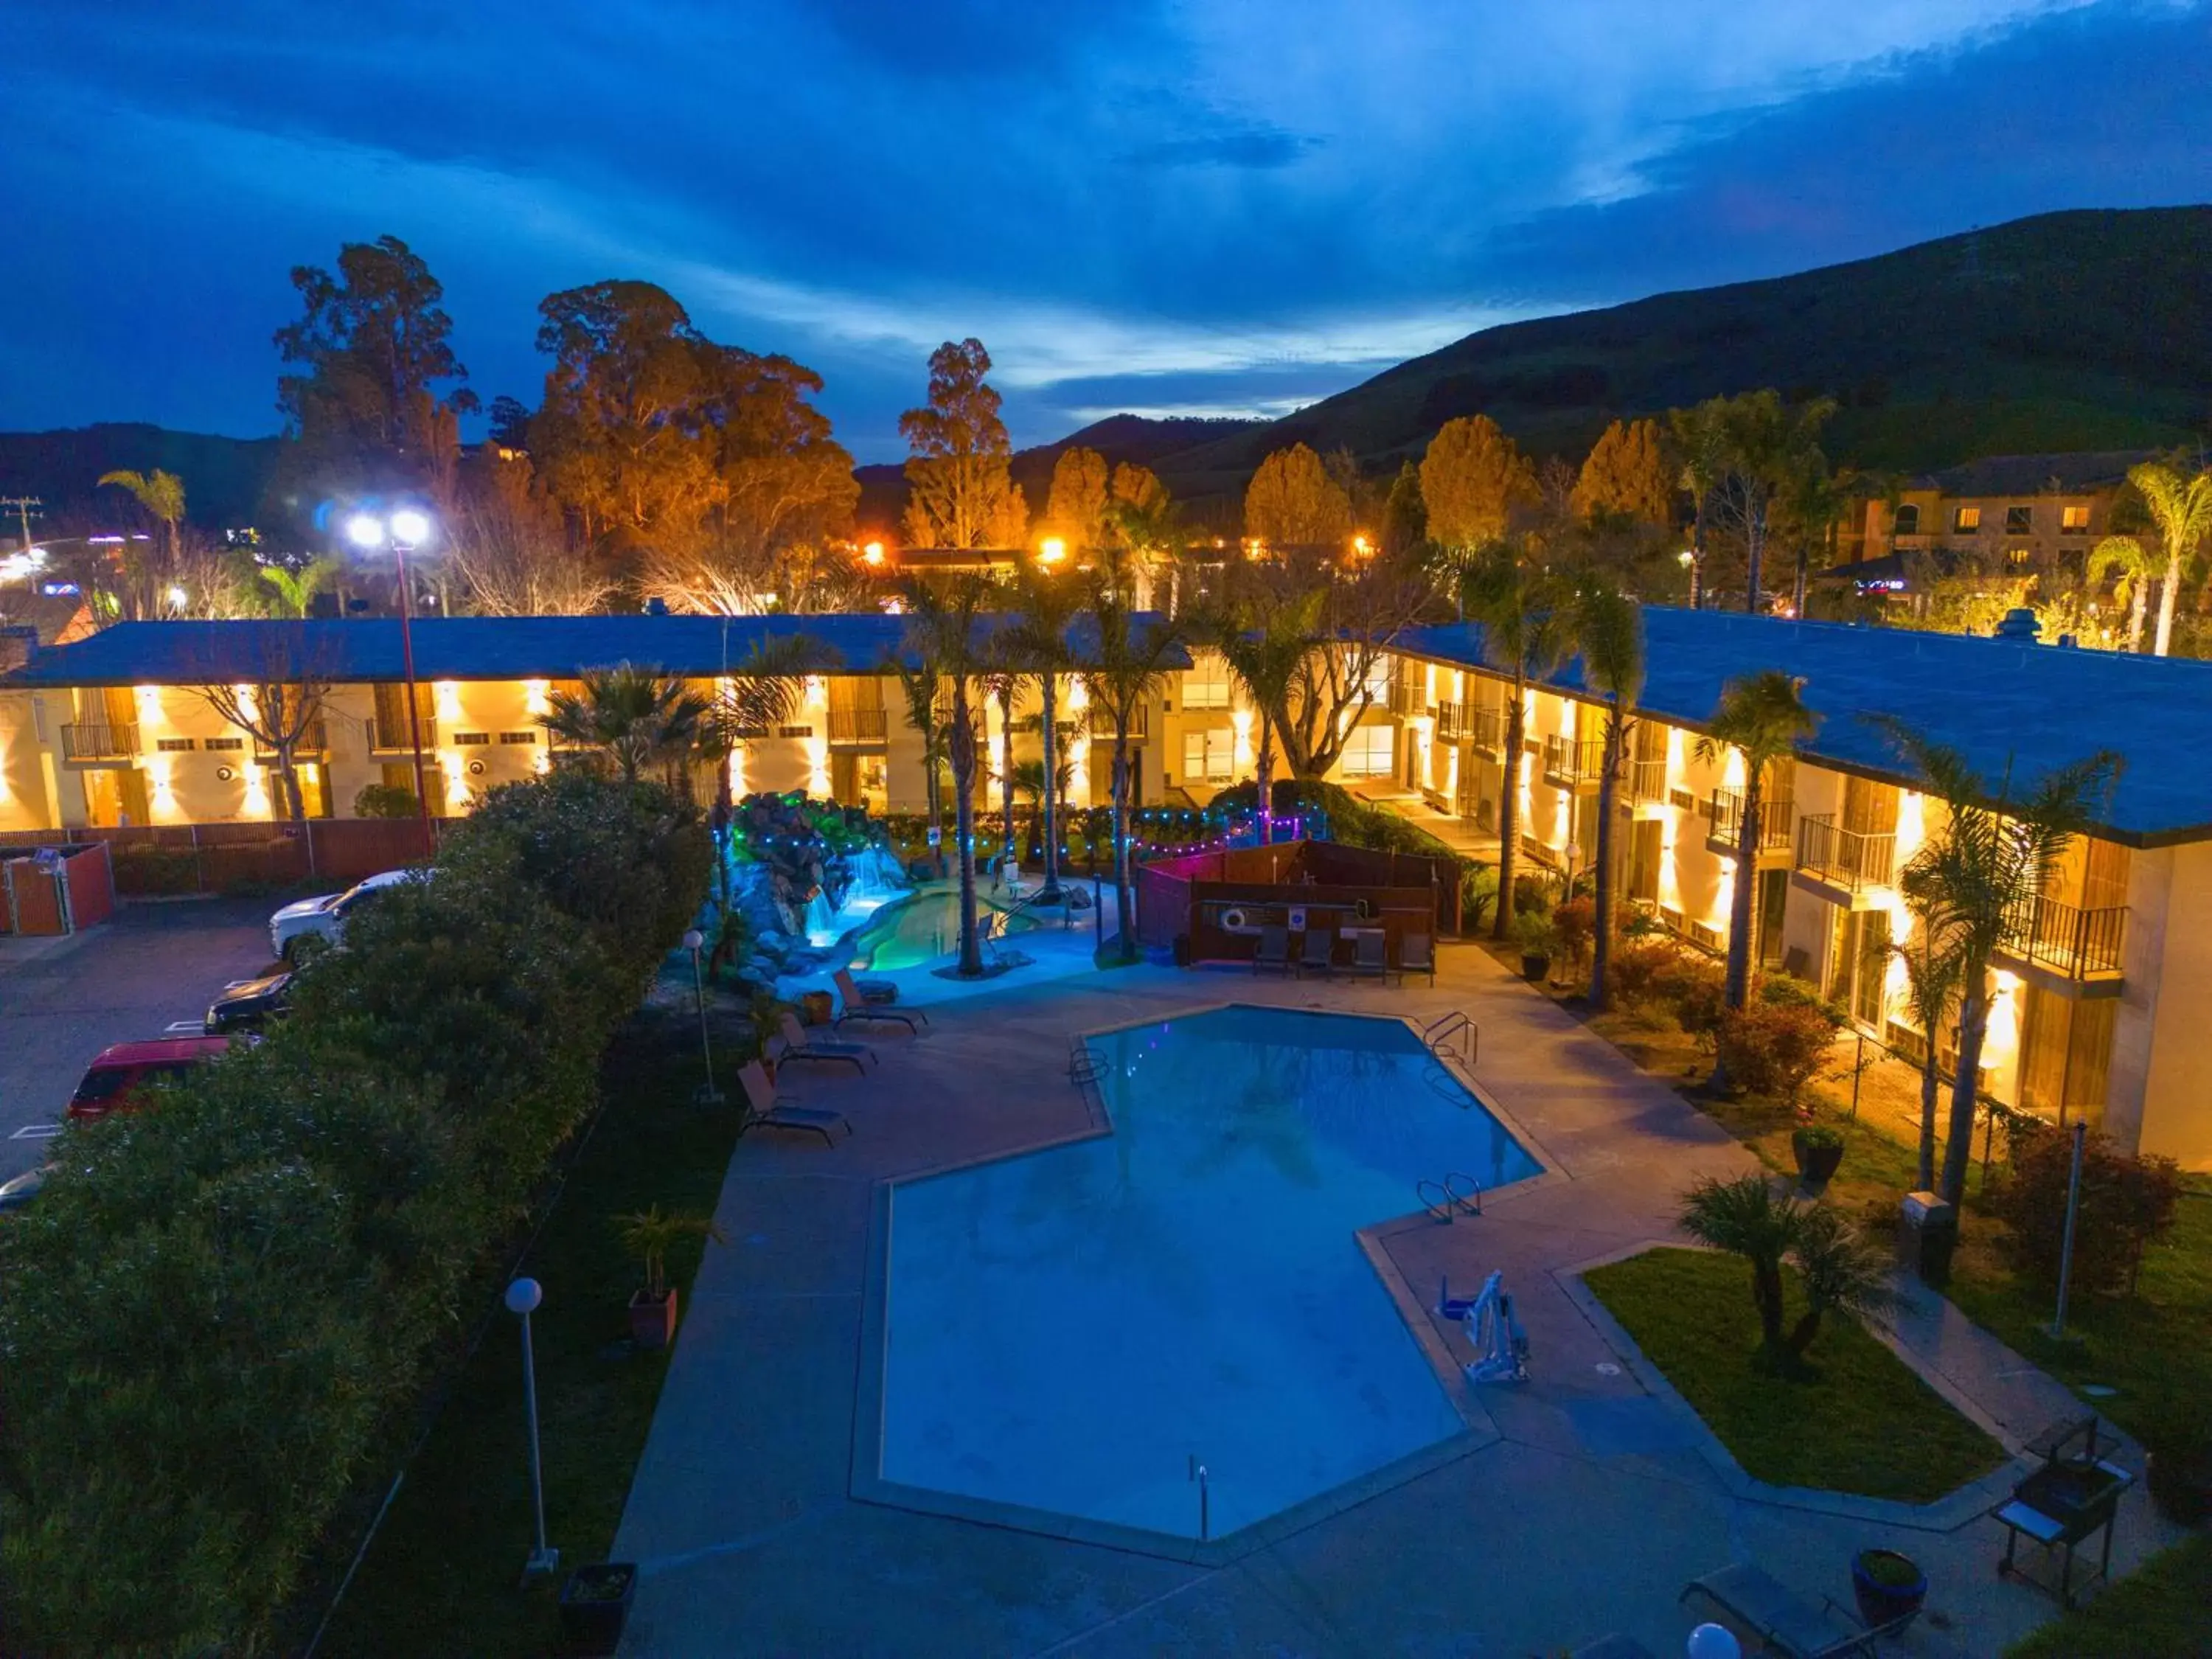 Pool View in Hotel Calle Joaquin - San Luis Obispo